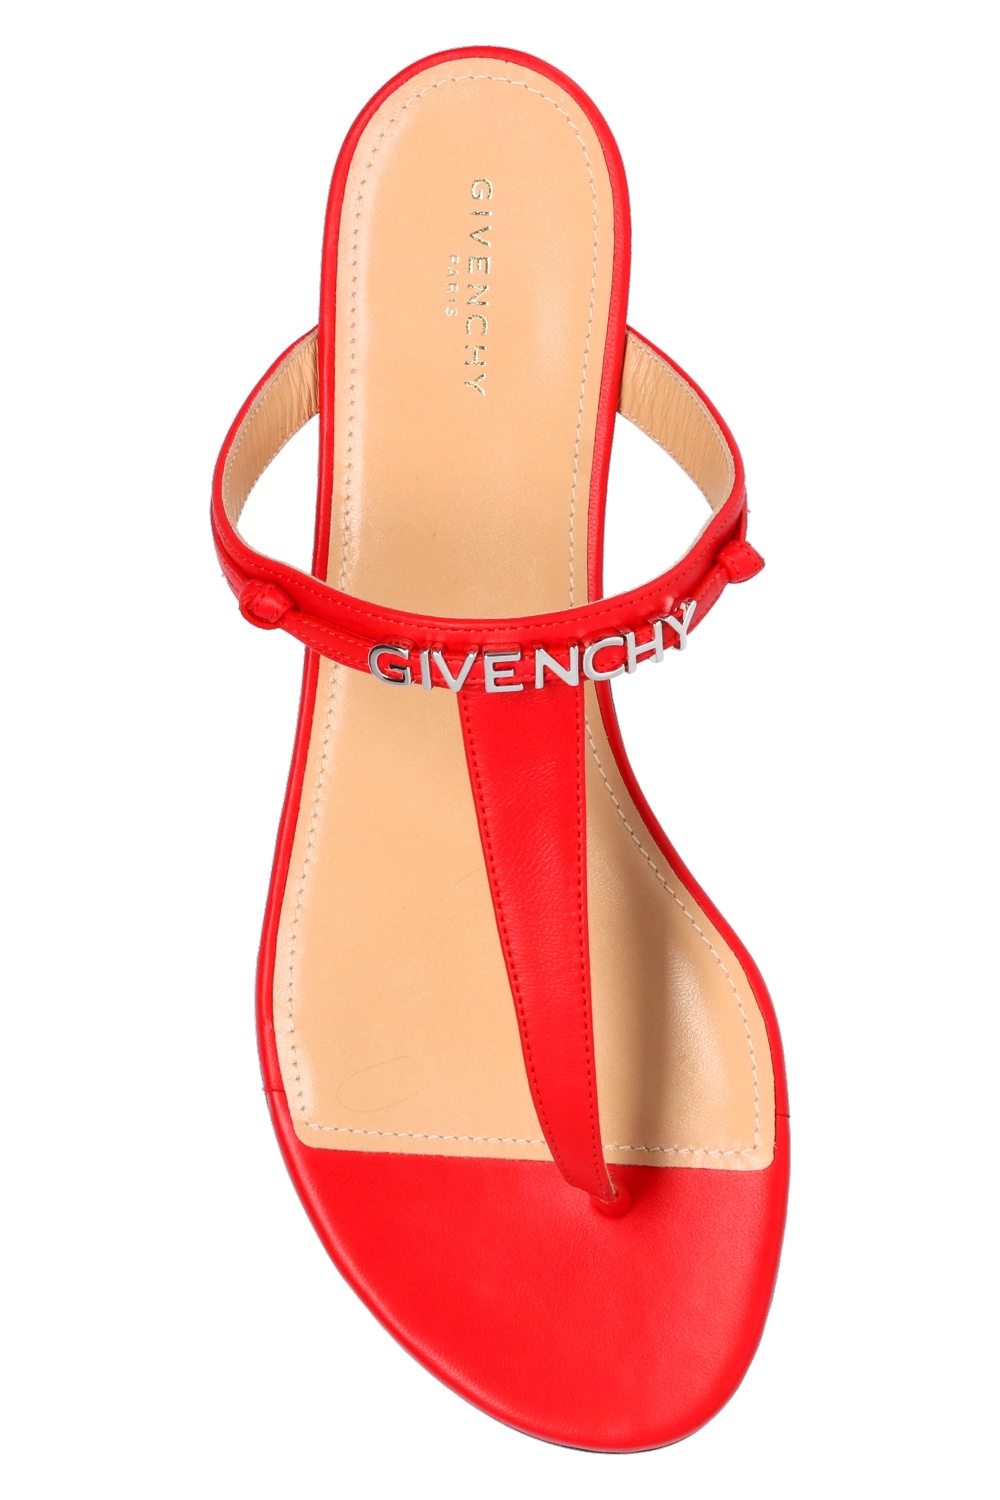 Givenchy Logo flip-flops